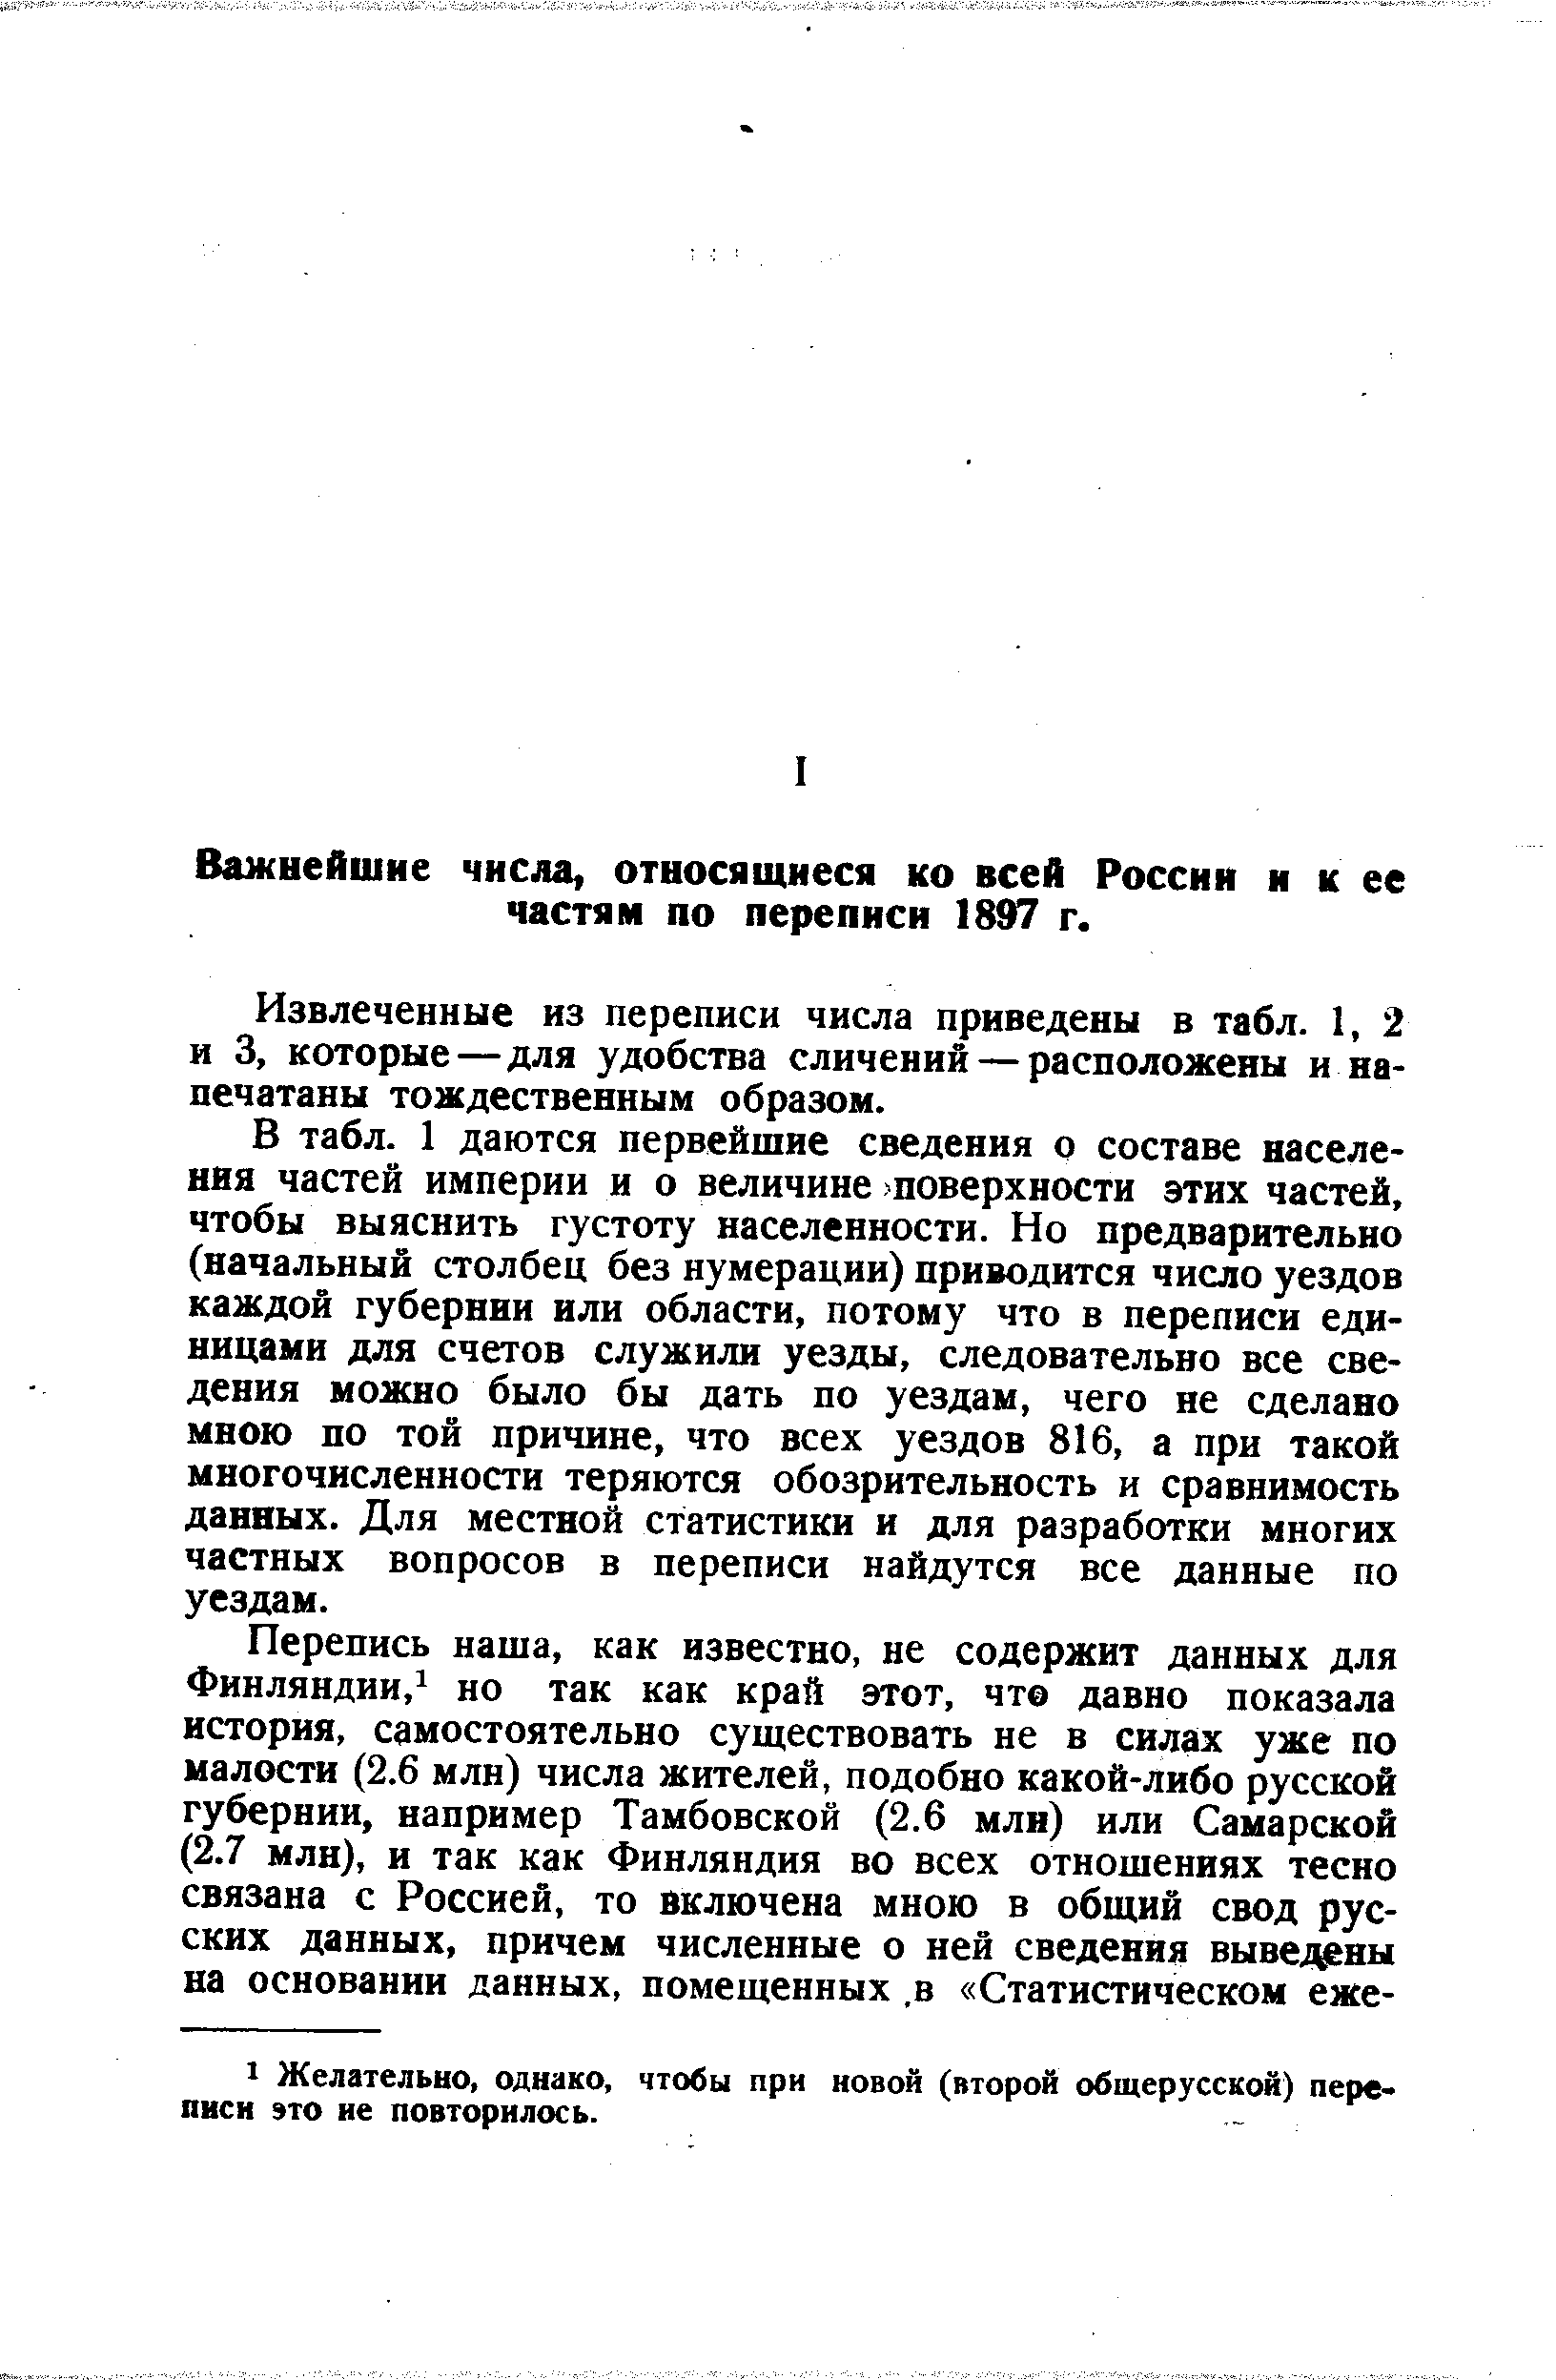 Важнейшие числа, относящиеся ко всей России и к ее частям по переписи 1897 г.